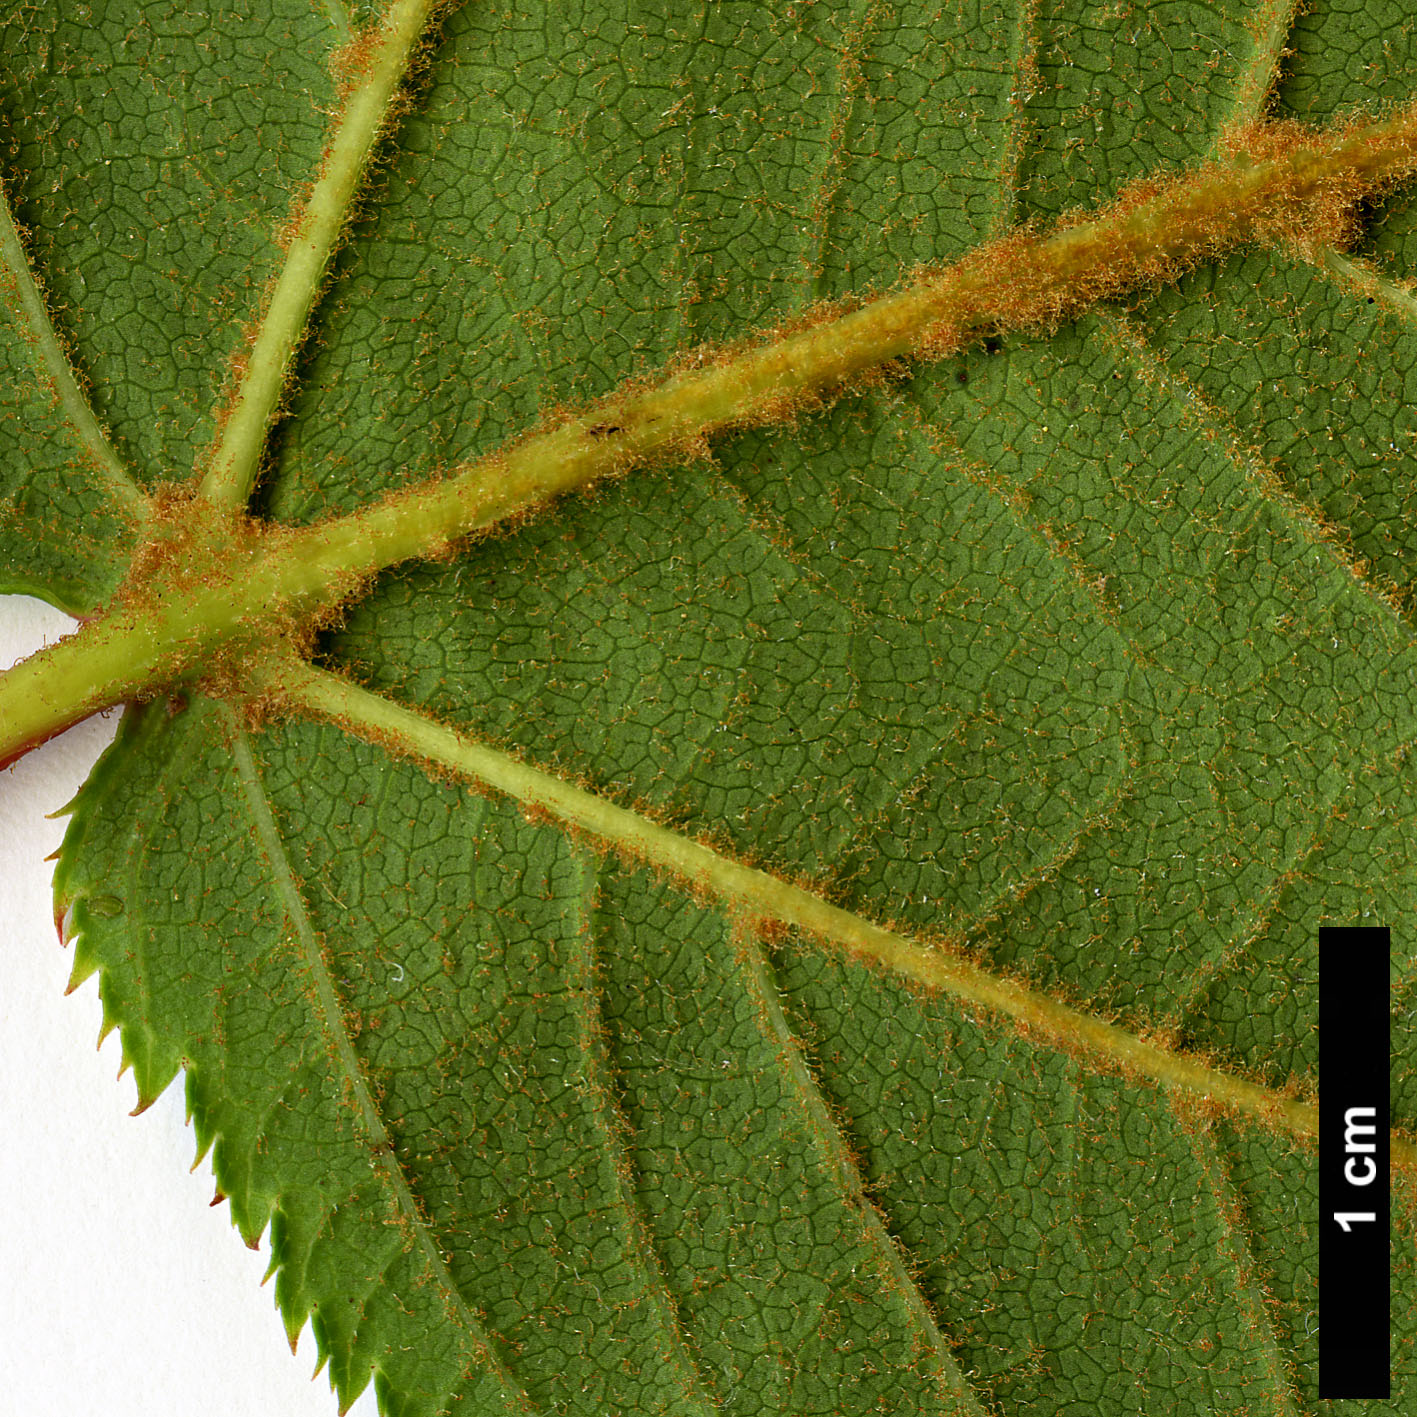 High resolution image: Family: Sapindaceae - Genus: Acer - Taxon: pectinatum - SpeciesSub: subsp. pectinatum